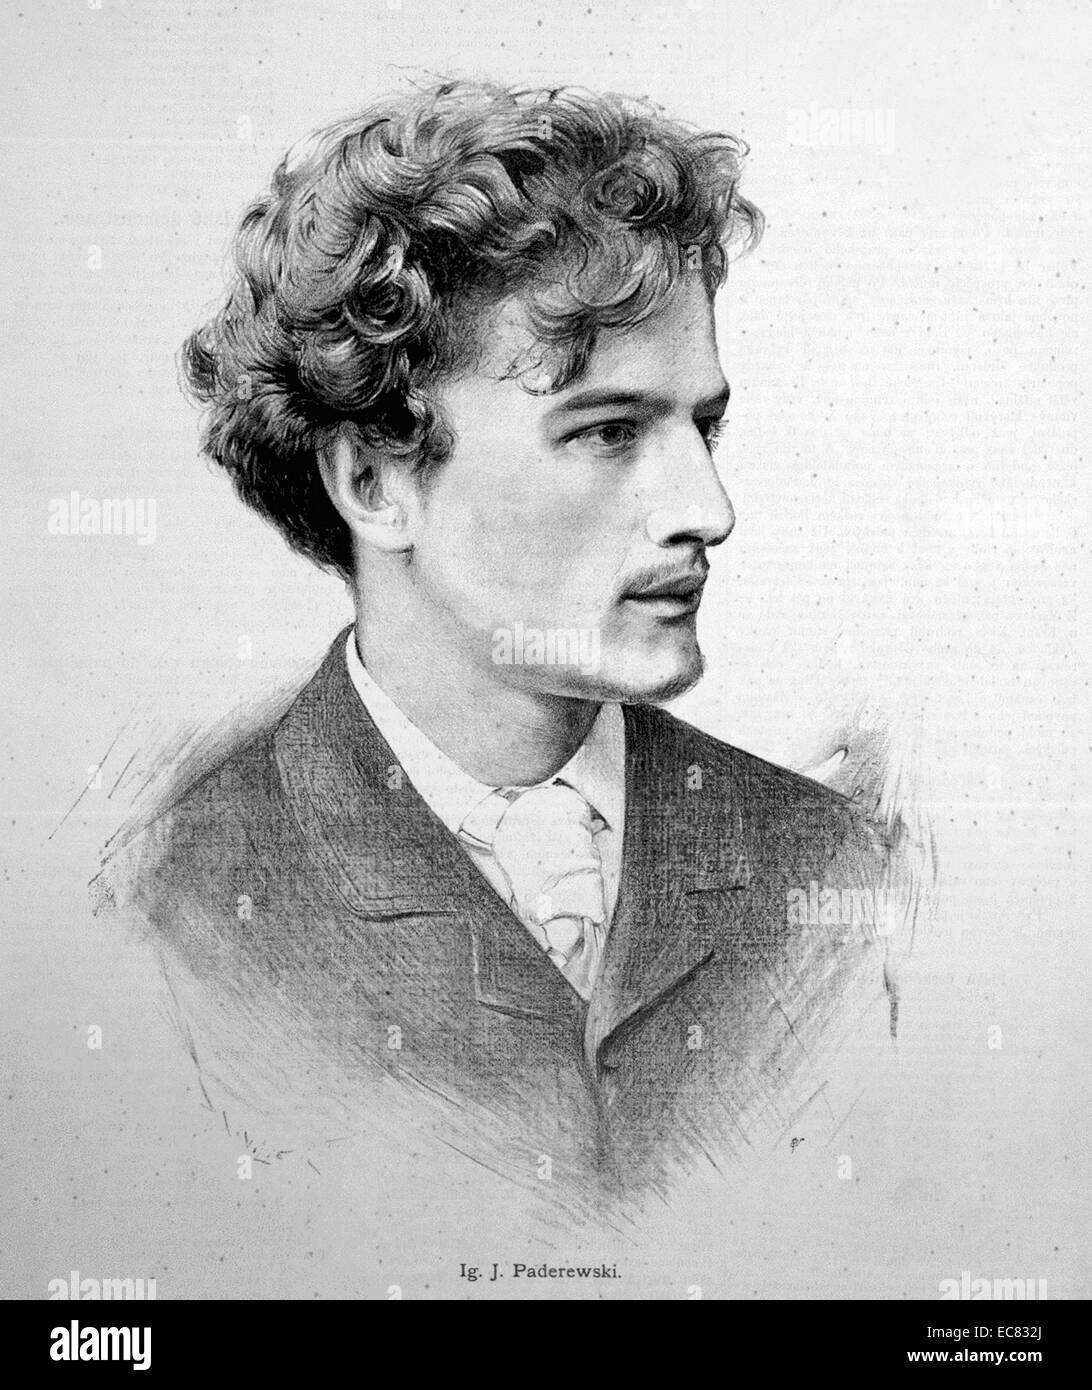 Ignacy Jan Paderewski 18 novembre 1860 - 29 juin 1941), pianiste et compositeur polonais, homme politique, et porte-parole pour l'indépendance de la Pologne Banque D'Images